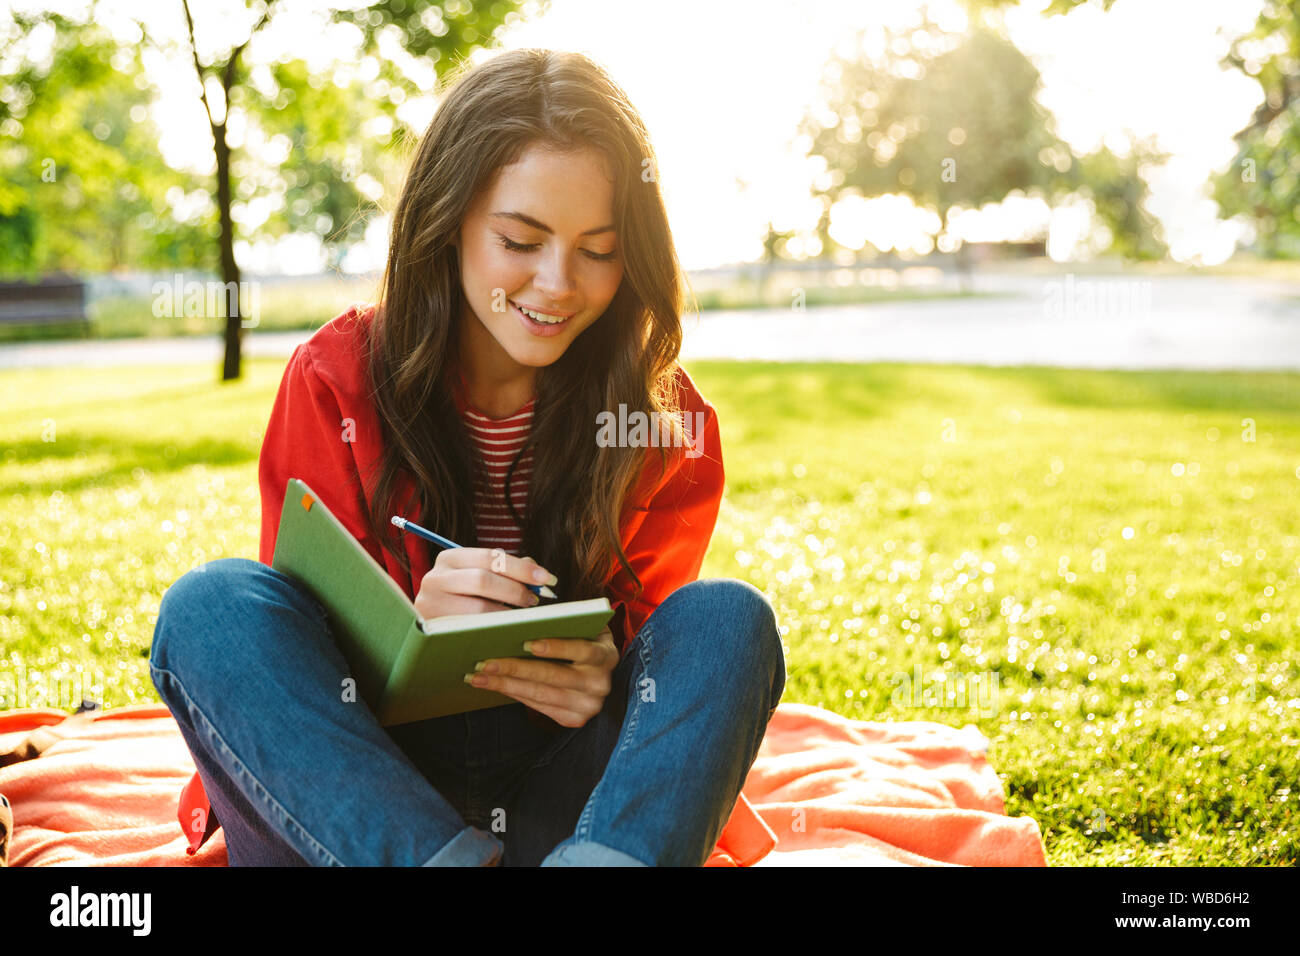 Bild der kaukasischen girl Student trägt die rote Jacke lächelnd und Verfassen von Notizen Tagebuch während auf Decke im Green Park sitzen Stockfoto